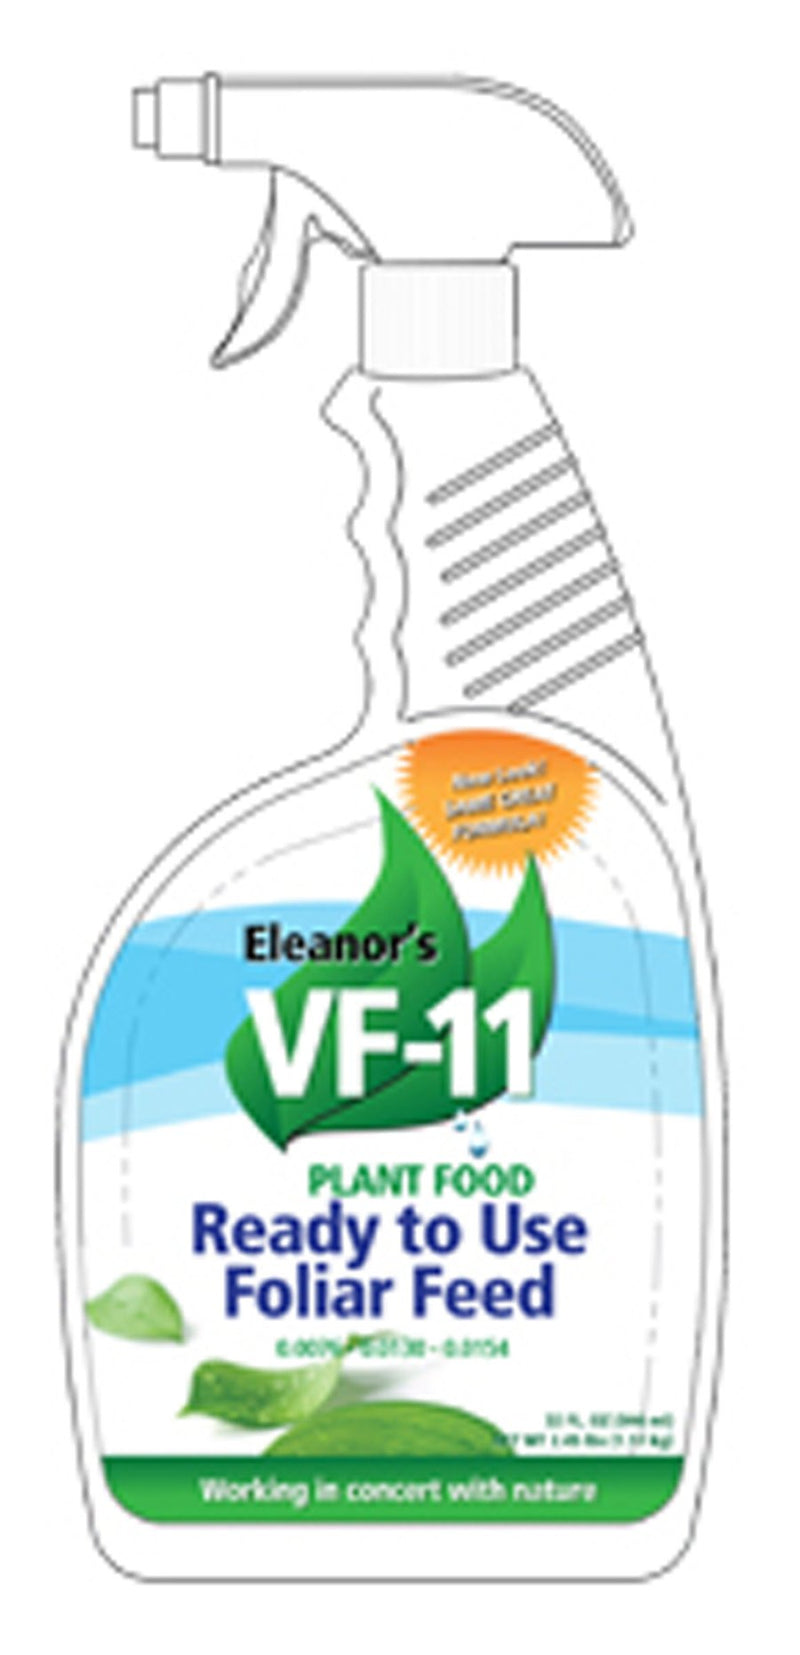 Eleanor's Vf-11 Plant Food Ready To Use Foliar Feed 32 Fl Oz